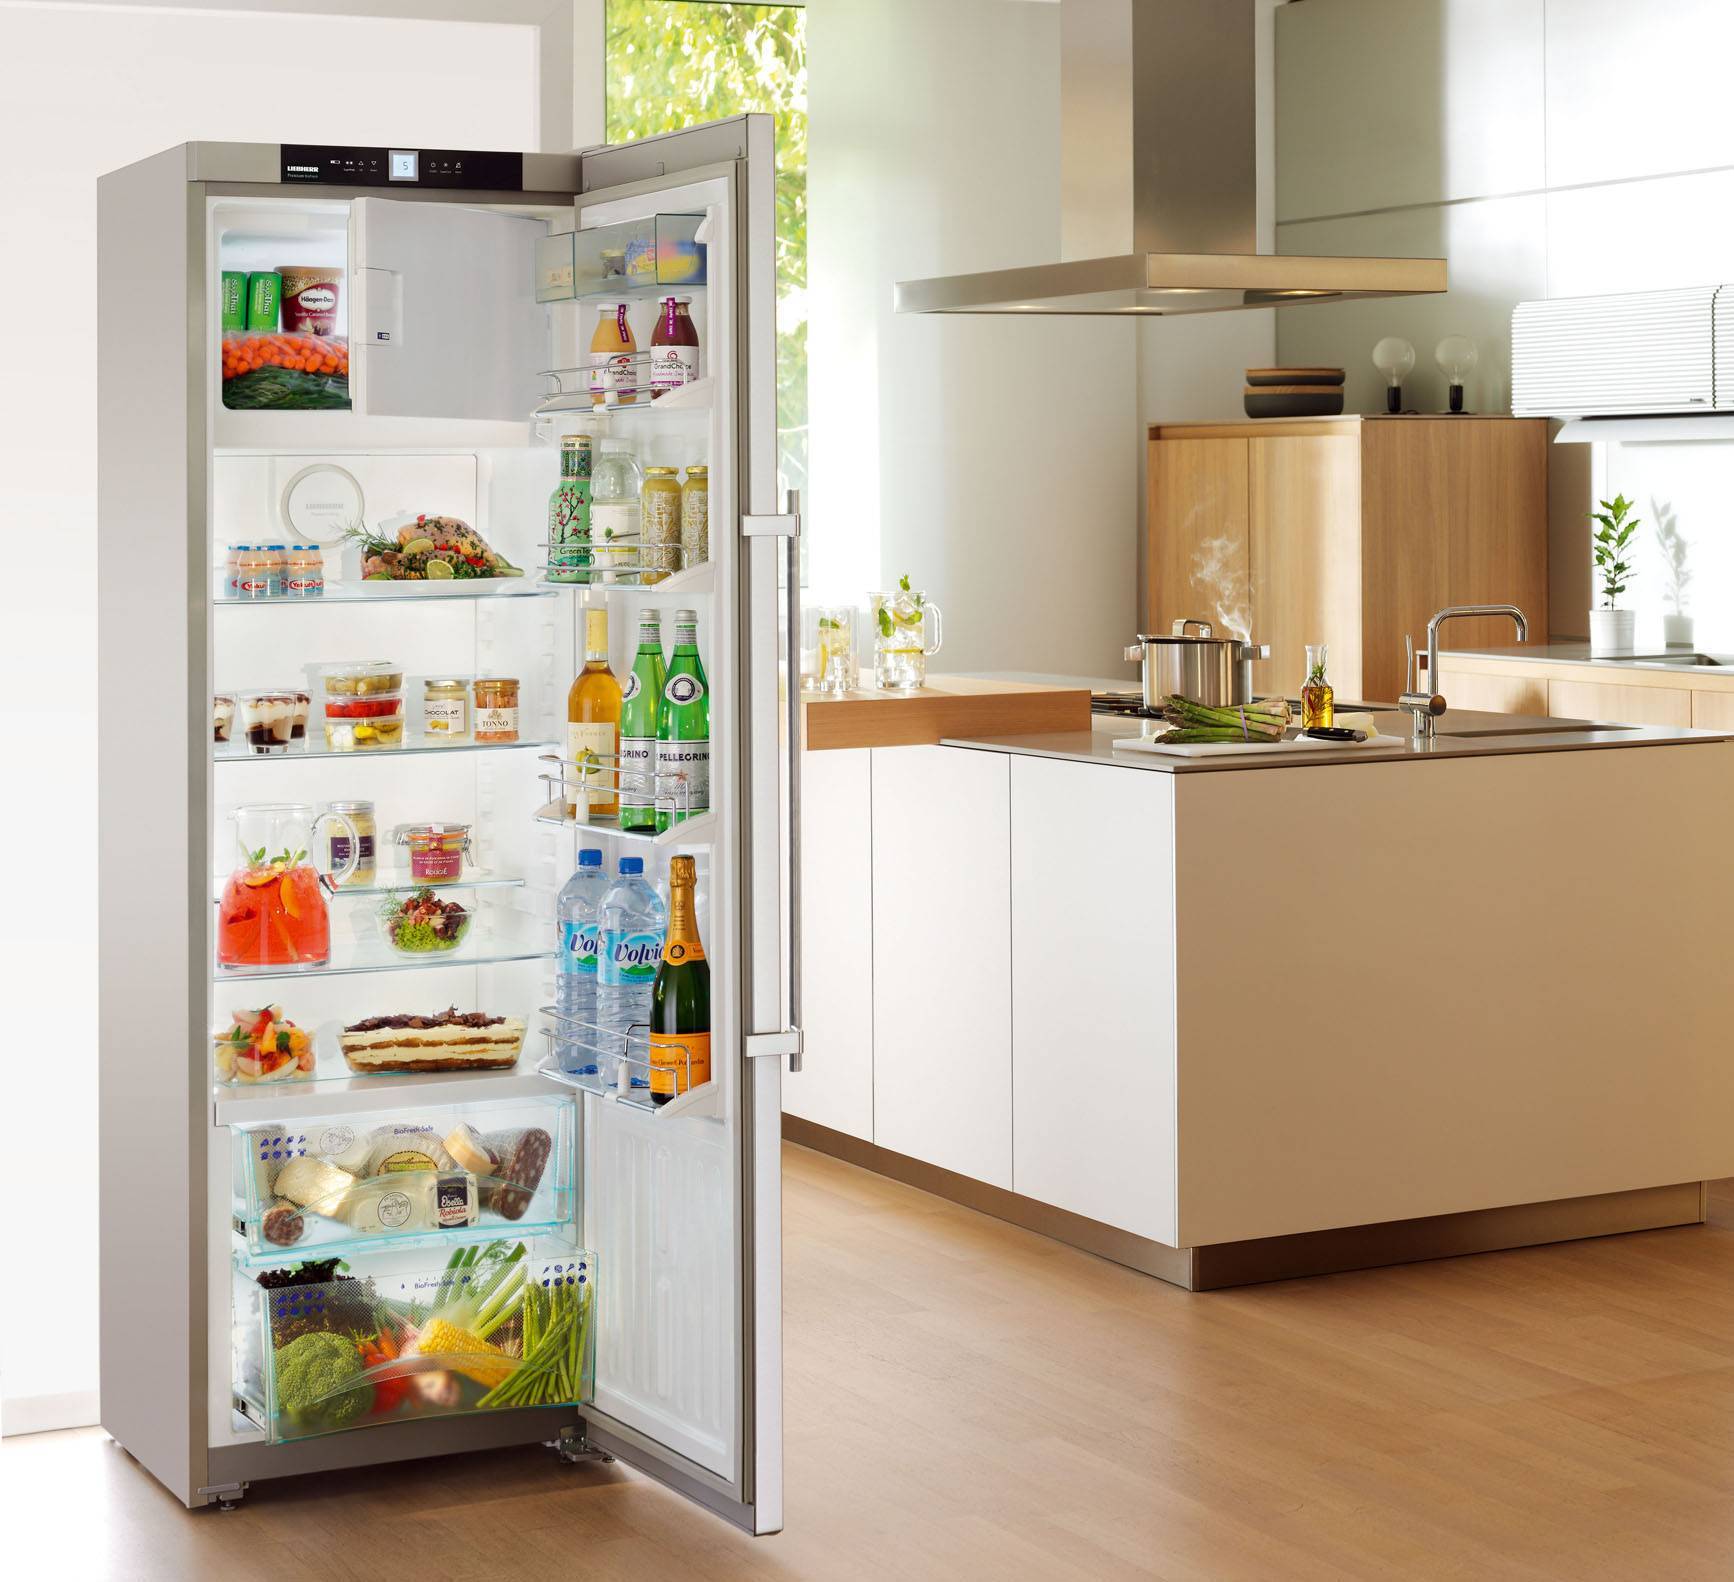 Самые надежные производители и бренды холодильников 2019 года